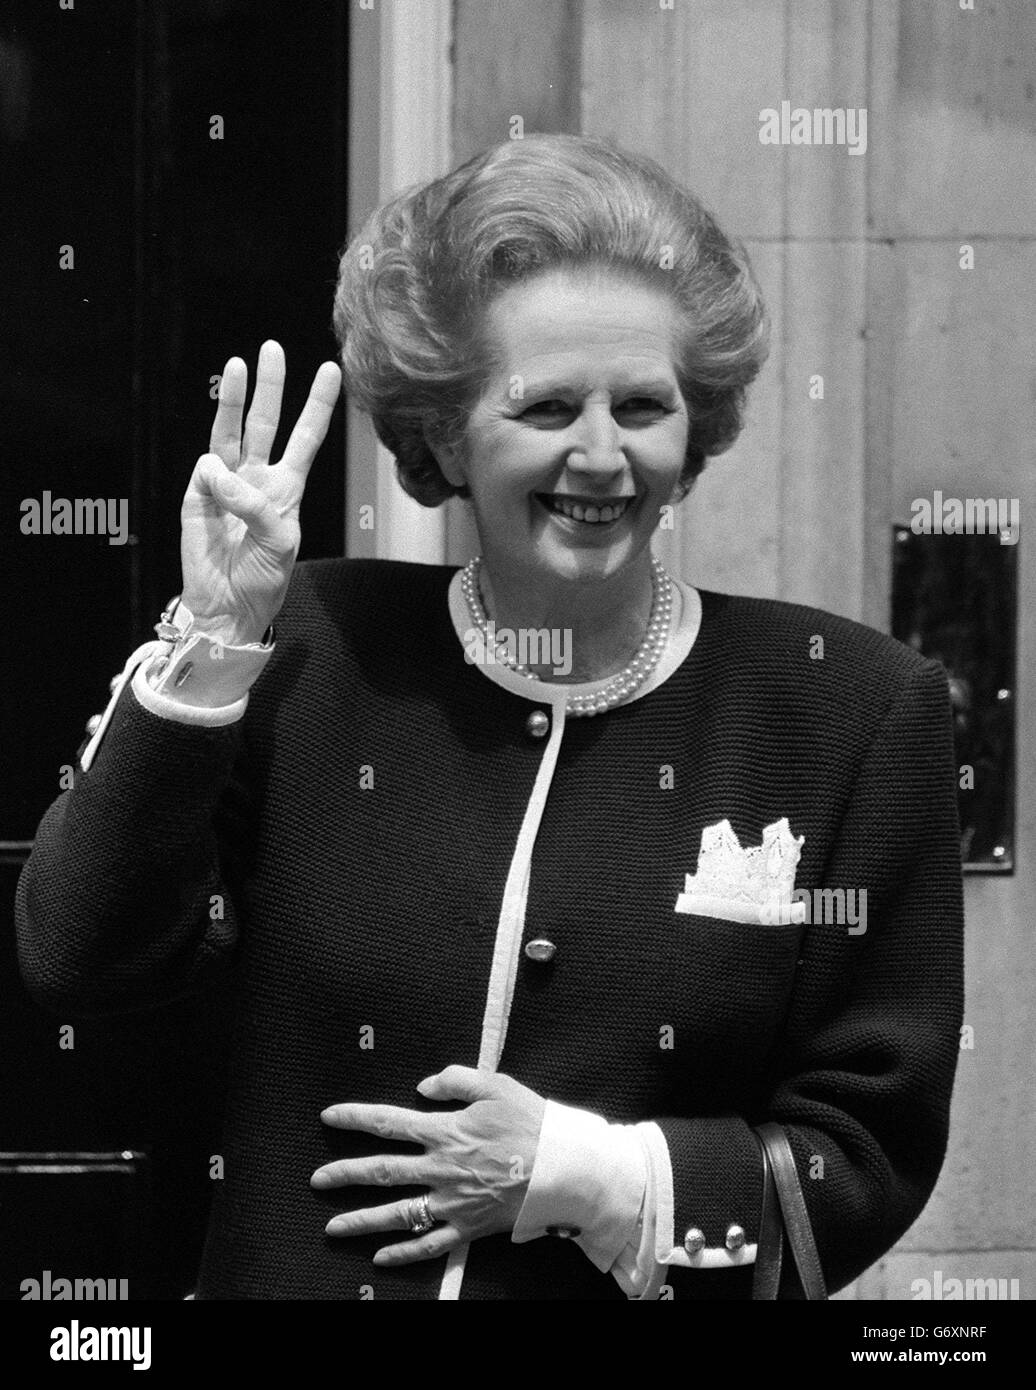 11 GIUGNO: In questo giorno nel 1987 Margaret Thatcher diventa il primo primo ministro per più di 160 anni a vincere tre mandati successivi. Il primo ministro Margaret Thatcher, che tiene tre dita fuori 10 Downing Street, a Londra, indica che è il primo primo primo ministro di questo secolo ad essere eletto per un terzo mandato. Foto Stock